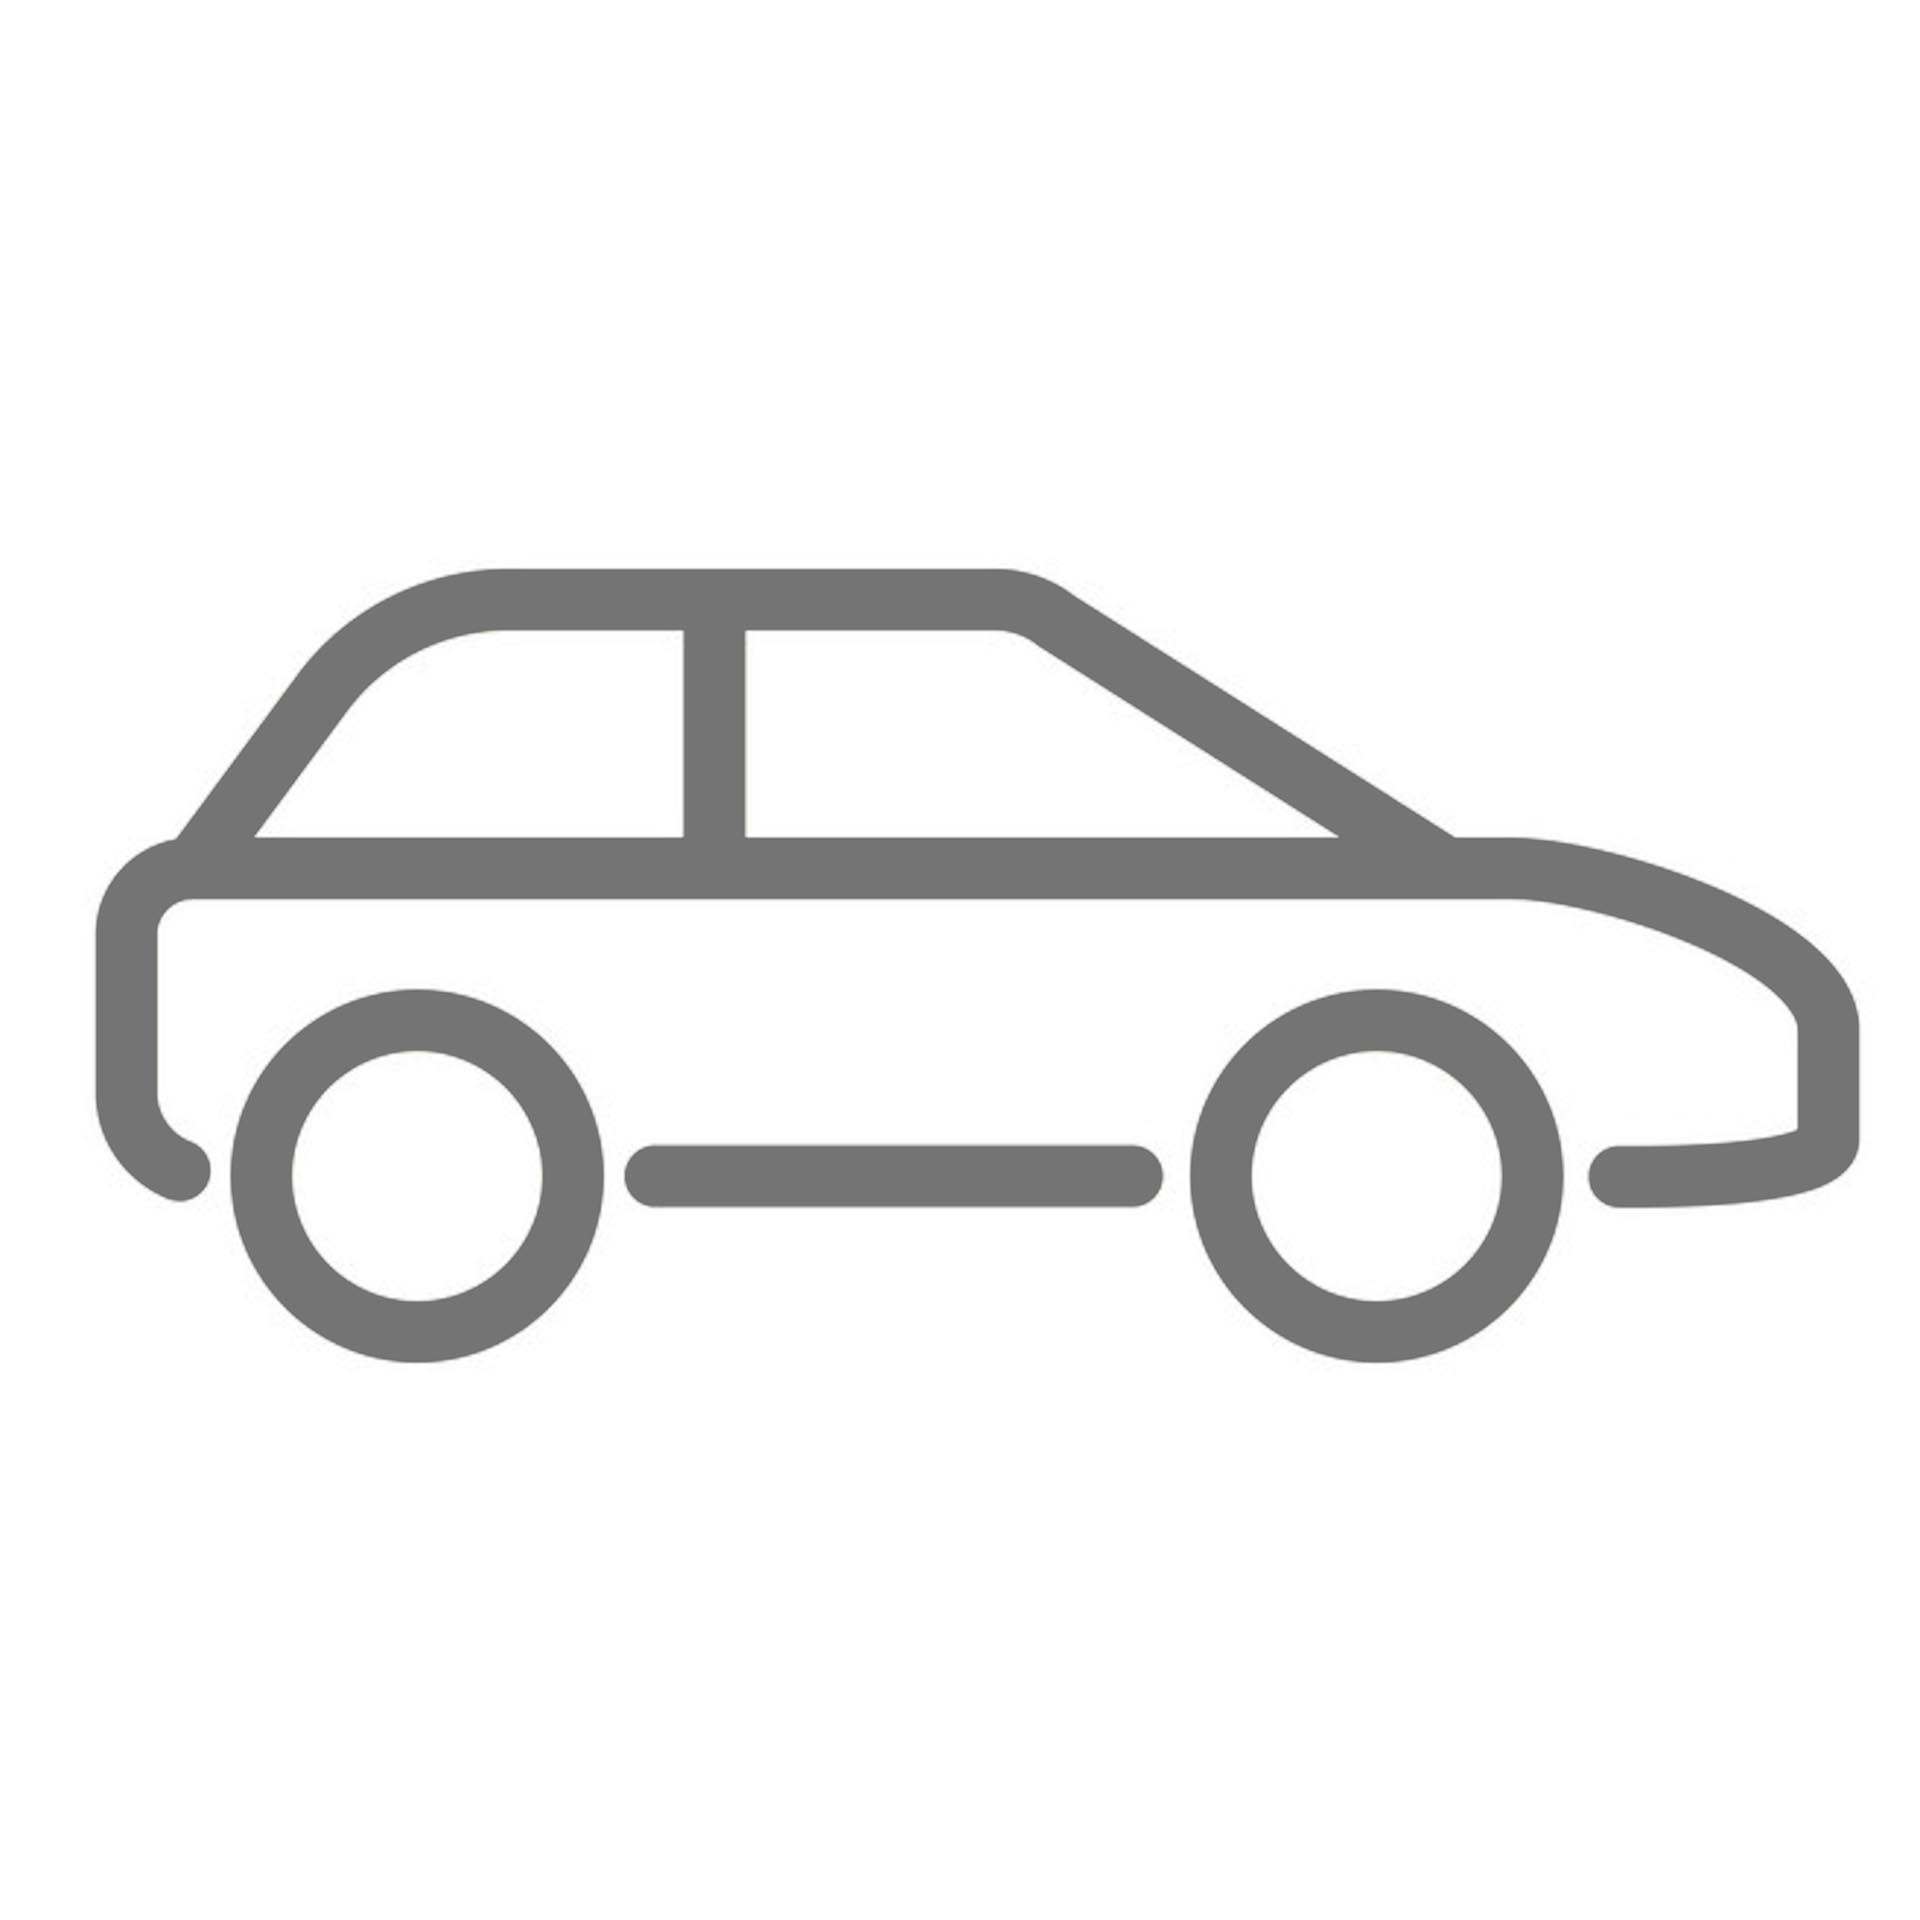 Car icon vector. Line drawing symbol.